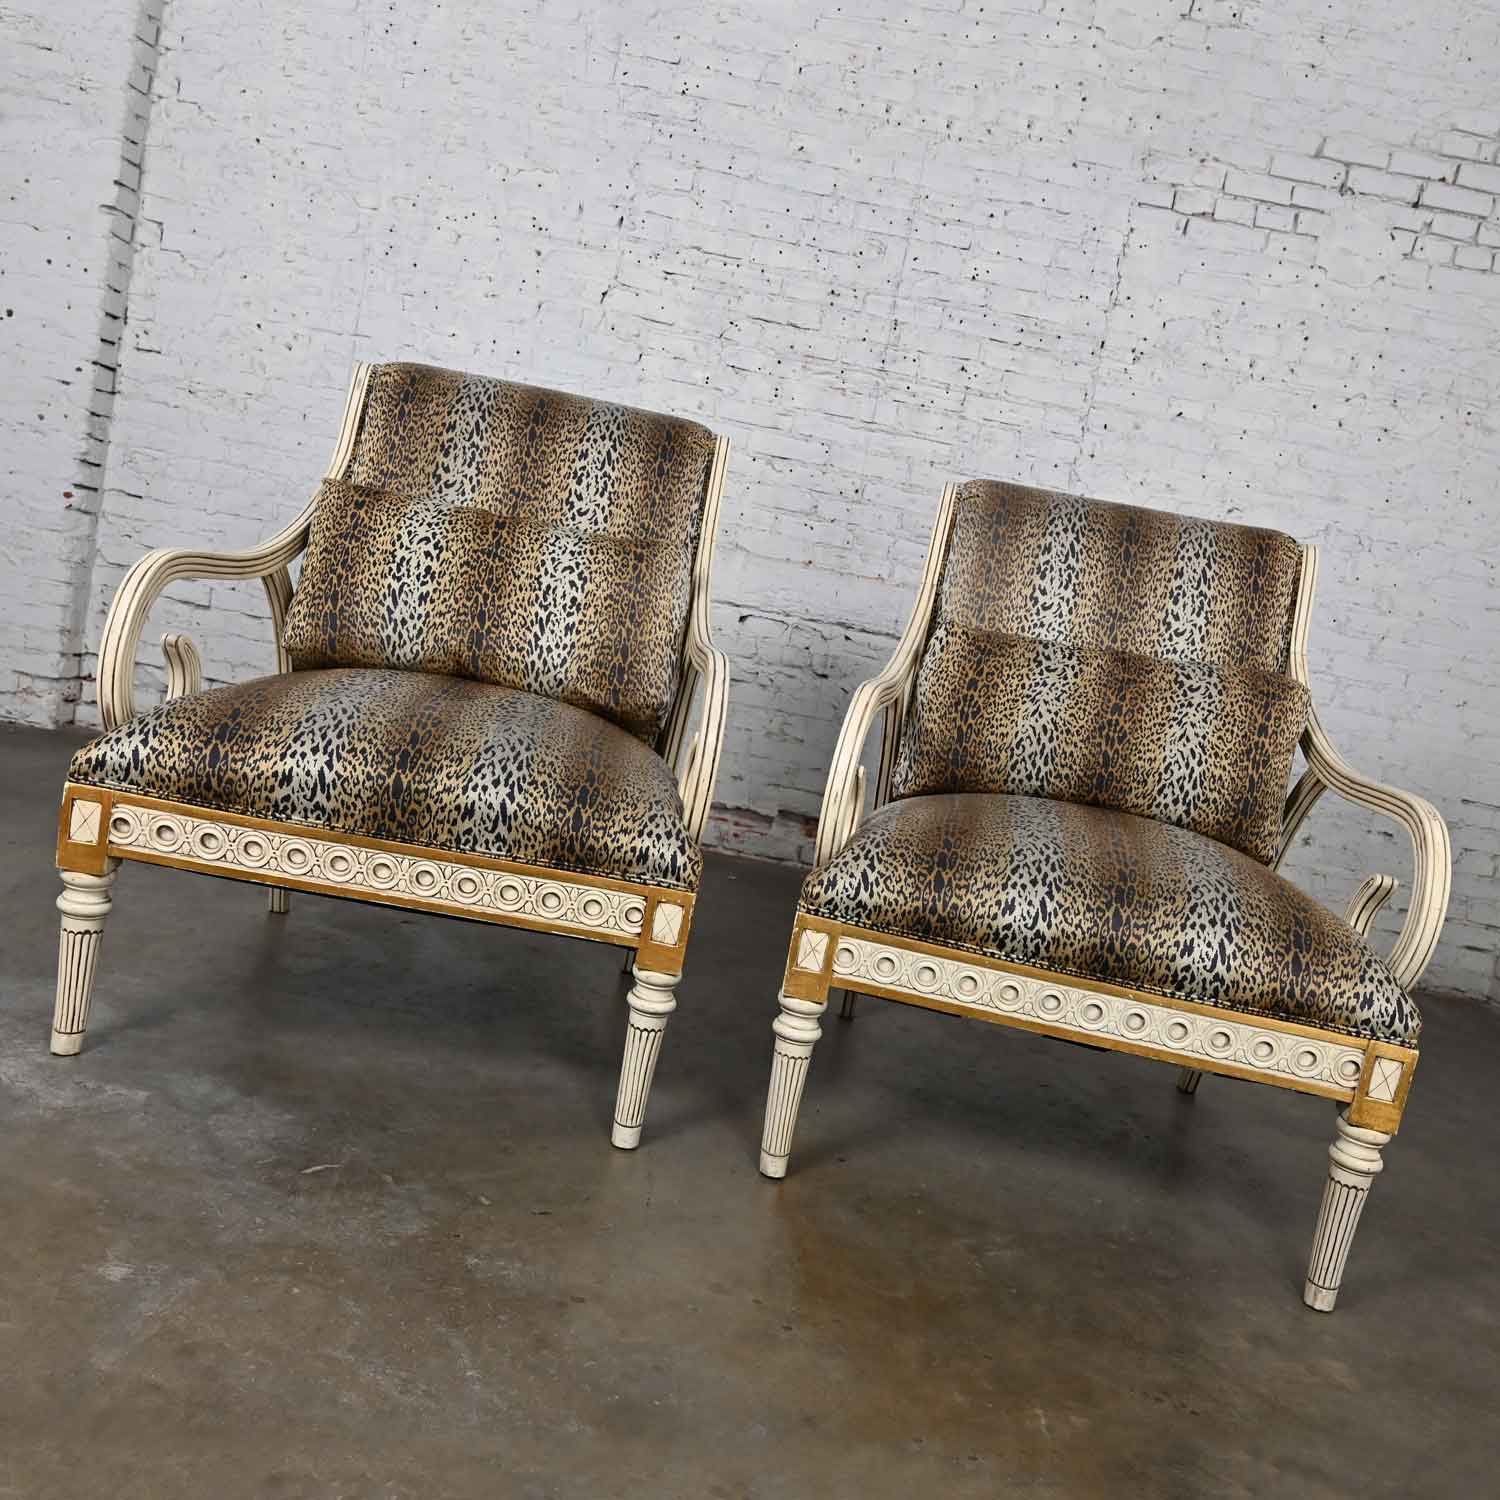 Merveilleux fauteuils de cheminée vintage Henredon Néoclassique Revival en tissu imprimé animalier et cadre blanc cassé et doré, une paire. Très bon état, tout en gardant à l'esprit qu'il s'agit d'un produit vintage et non neuf, qui présente donc